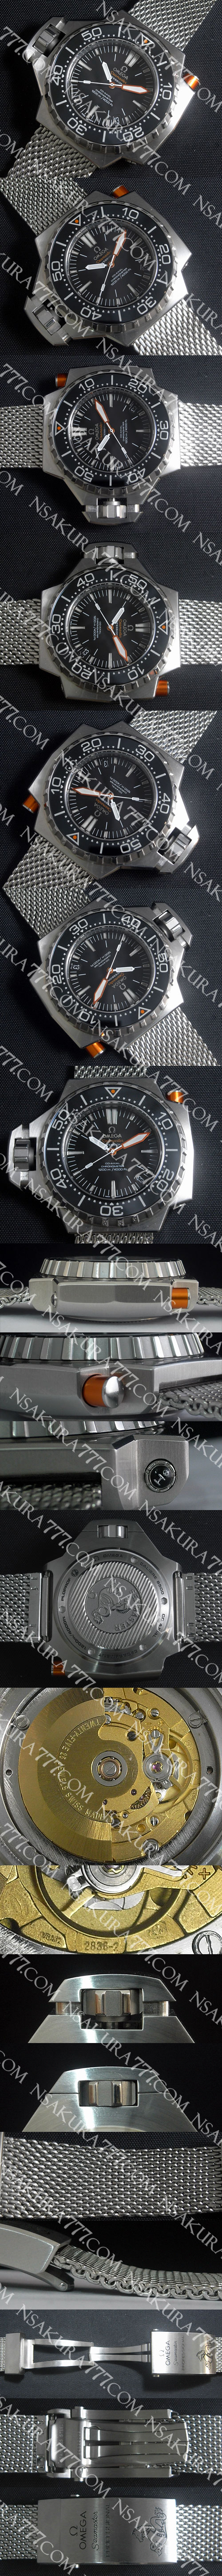 スーパーコピー時計オメガ シーマスター プロフェッショナル 1200 Swiss 2836-2 - ウインドウを閉じる